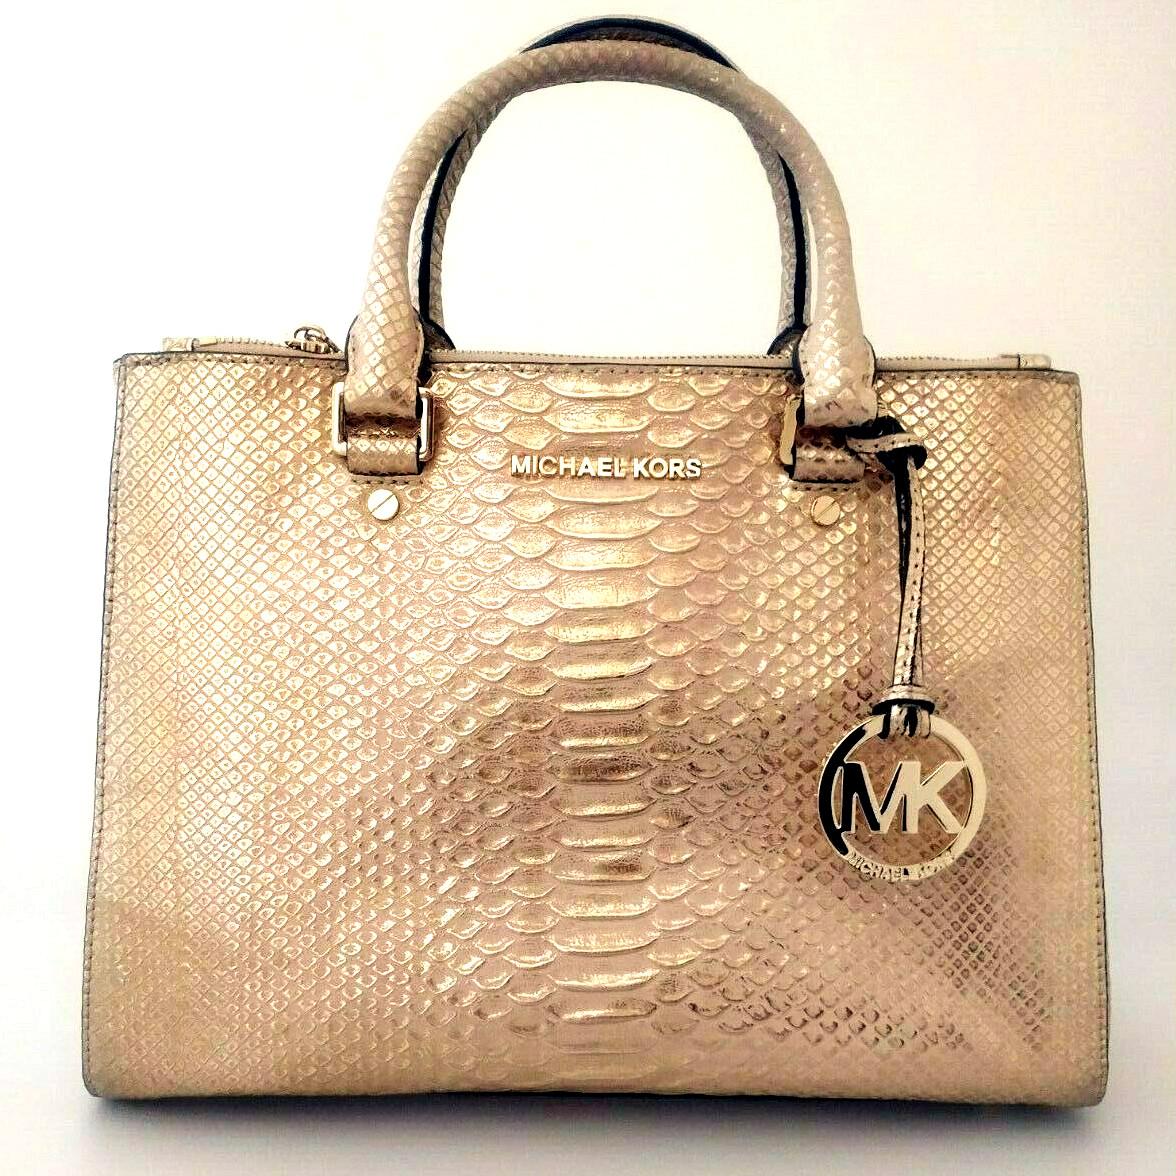 Michael Kors snakeskin crossbody bag - Women's handbags